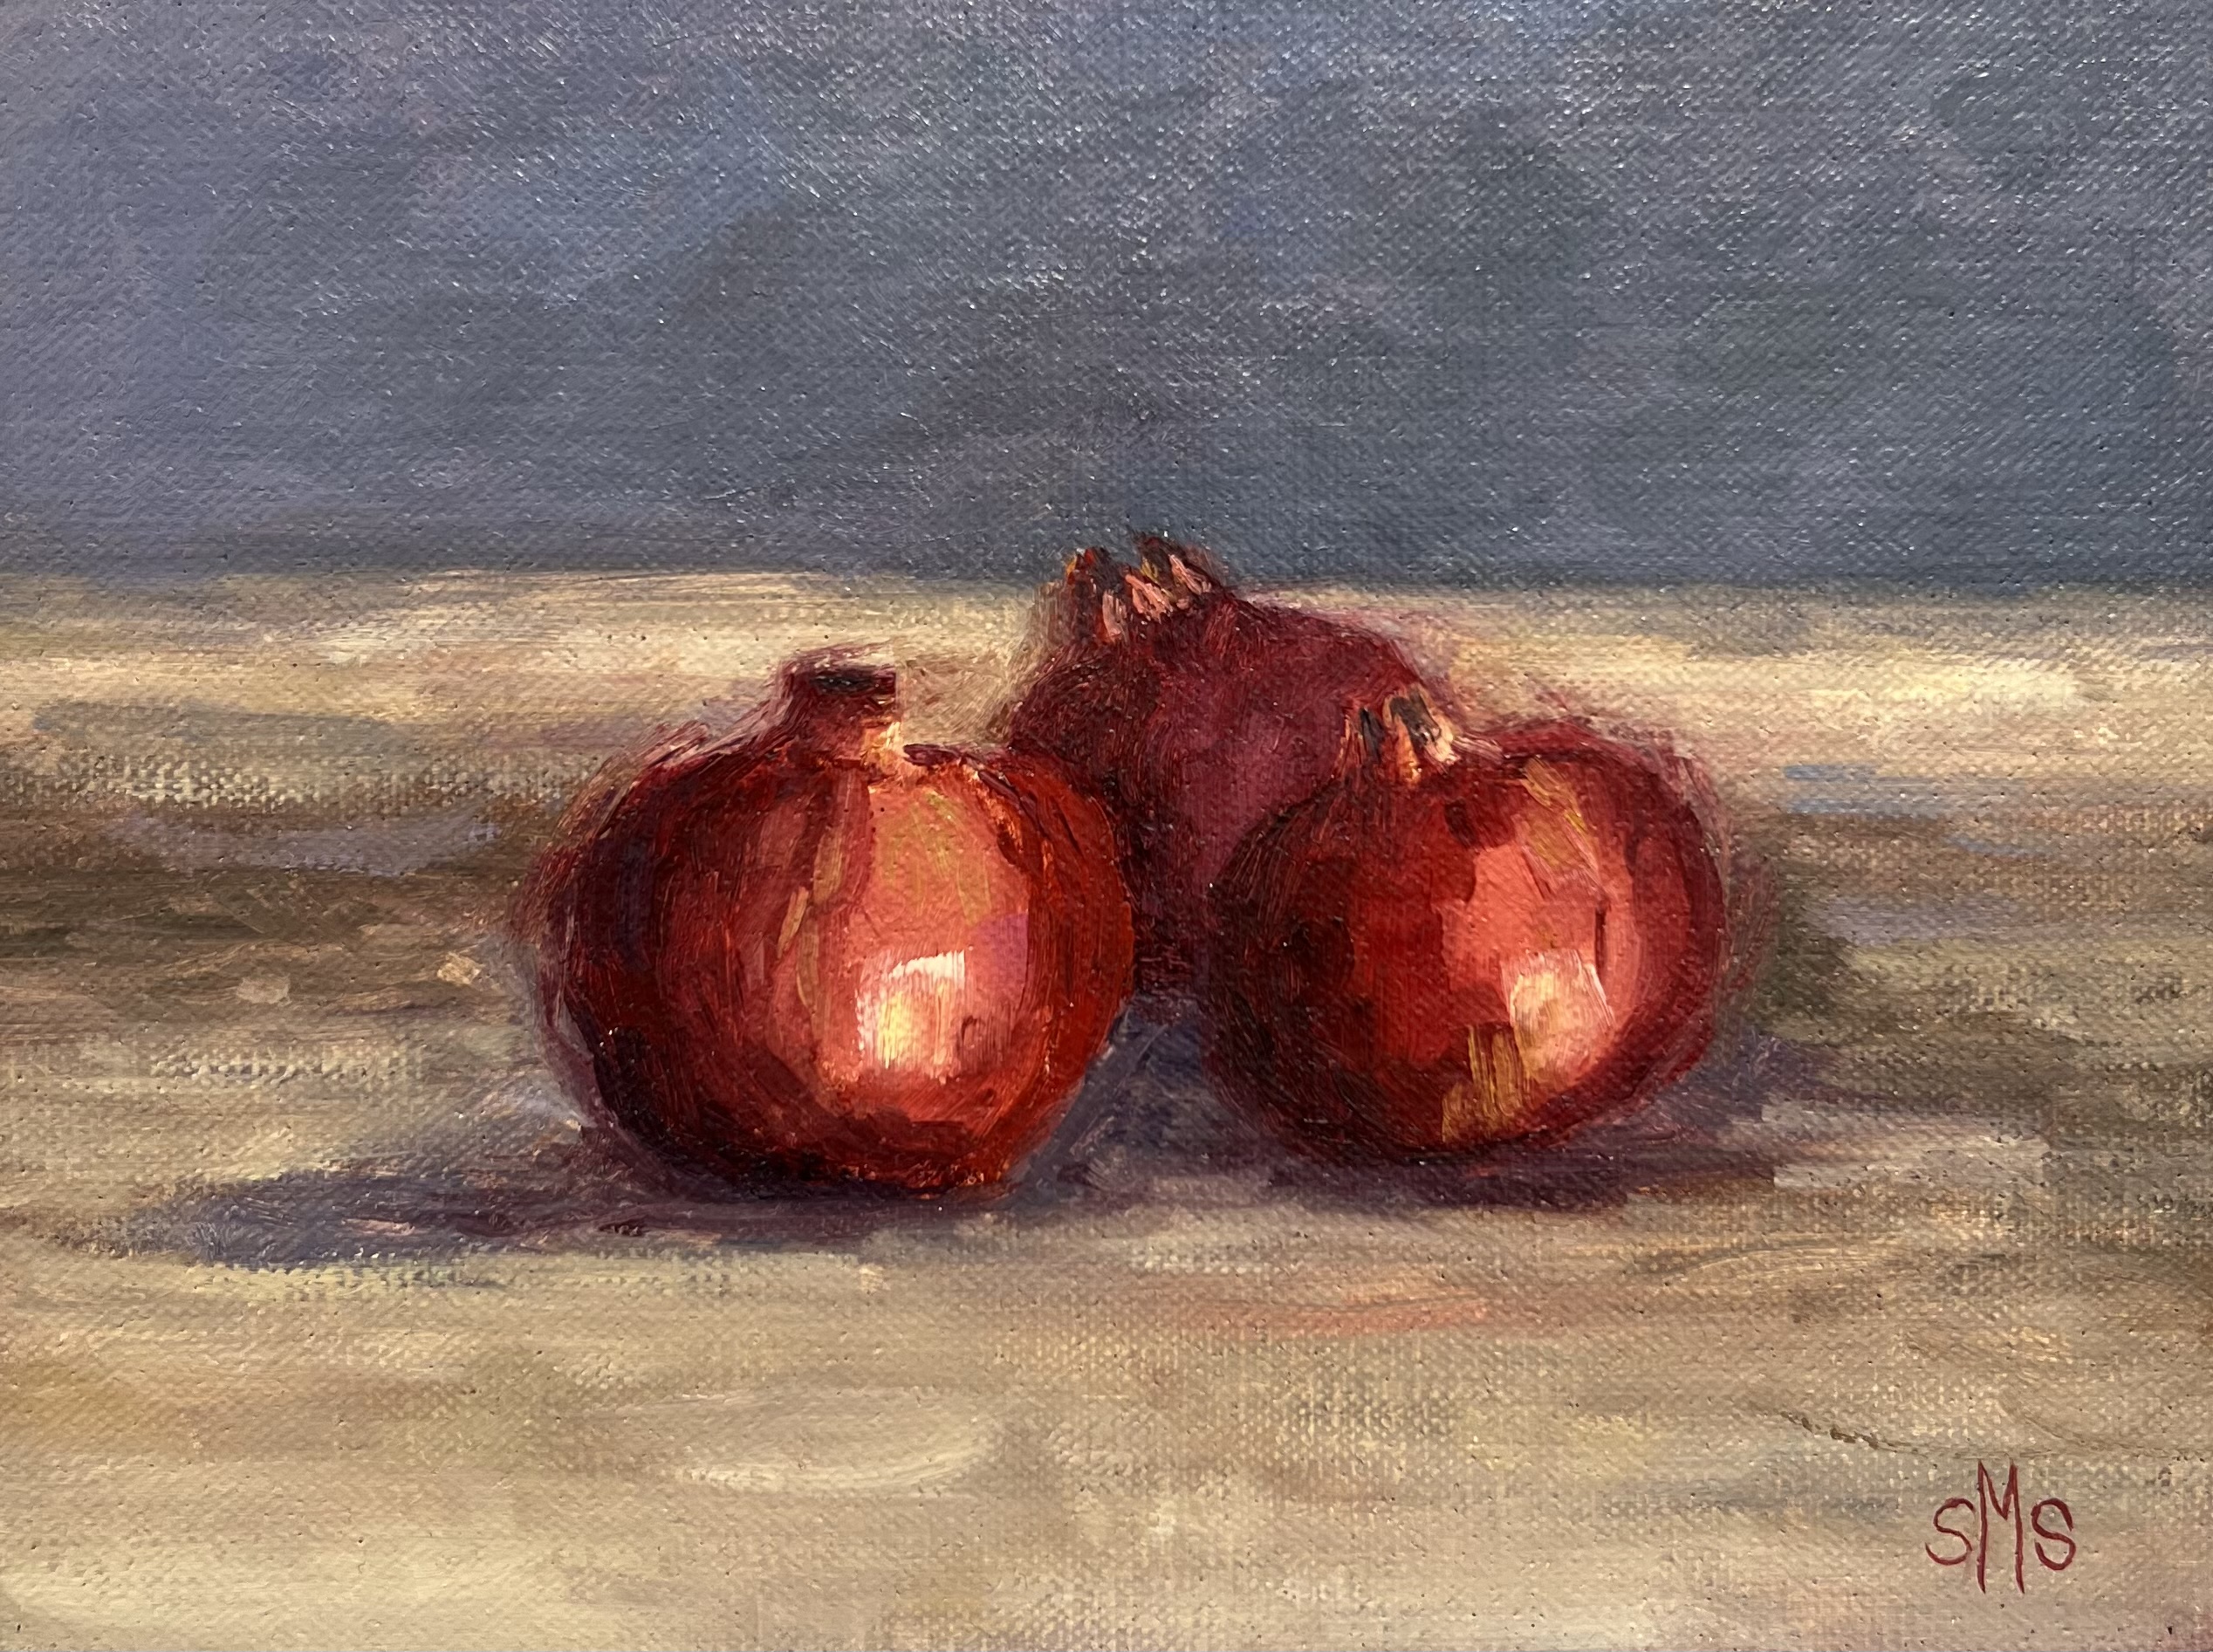 Three Pomegranates